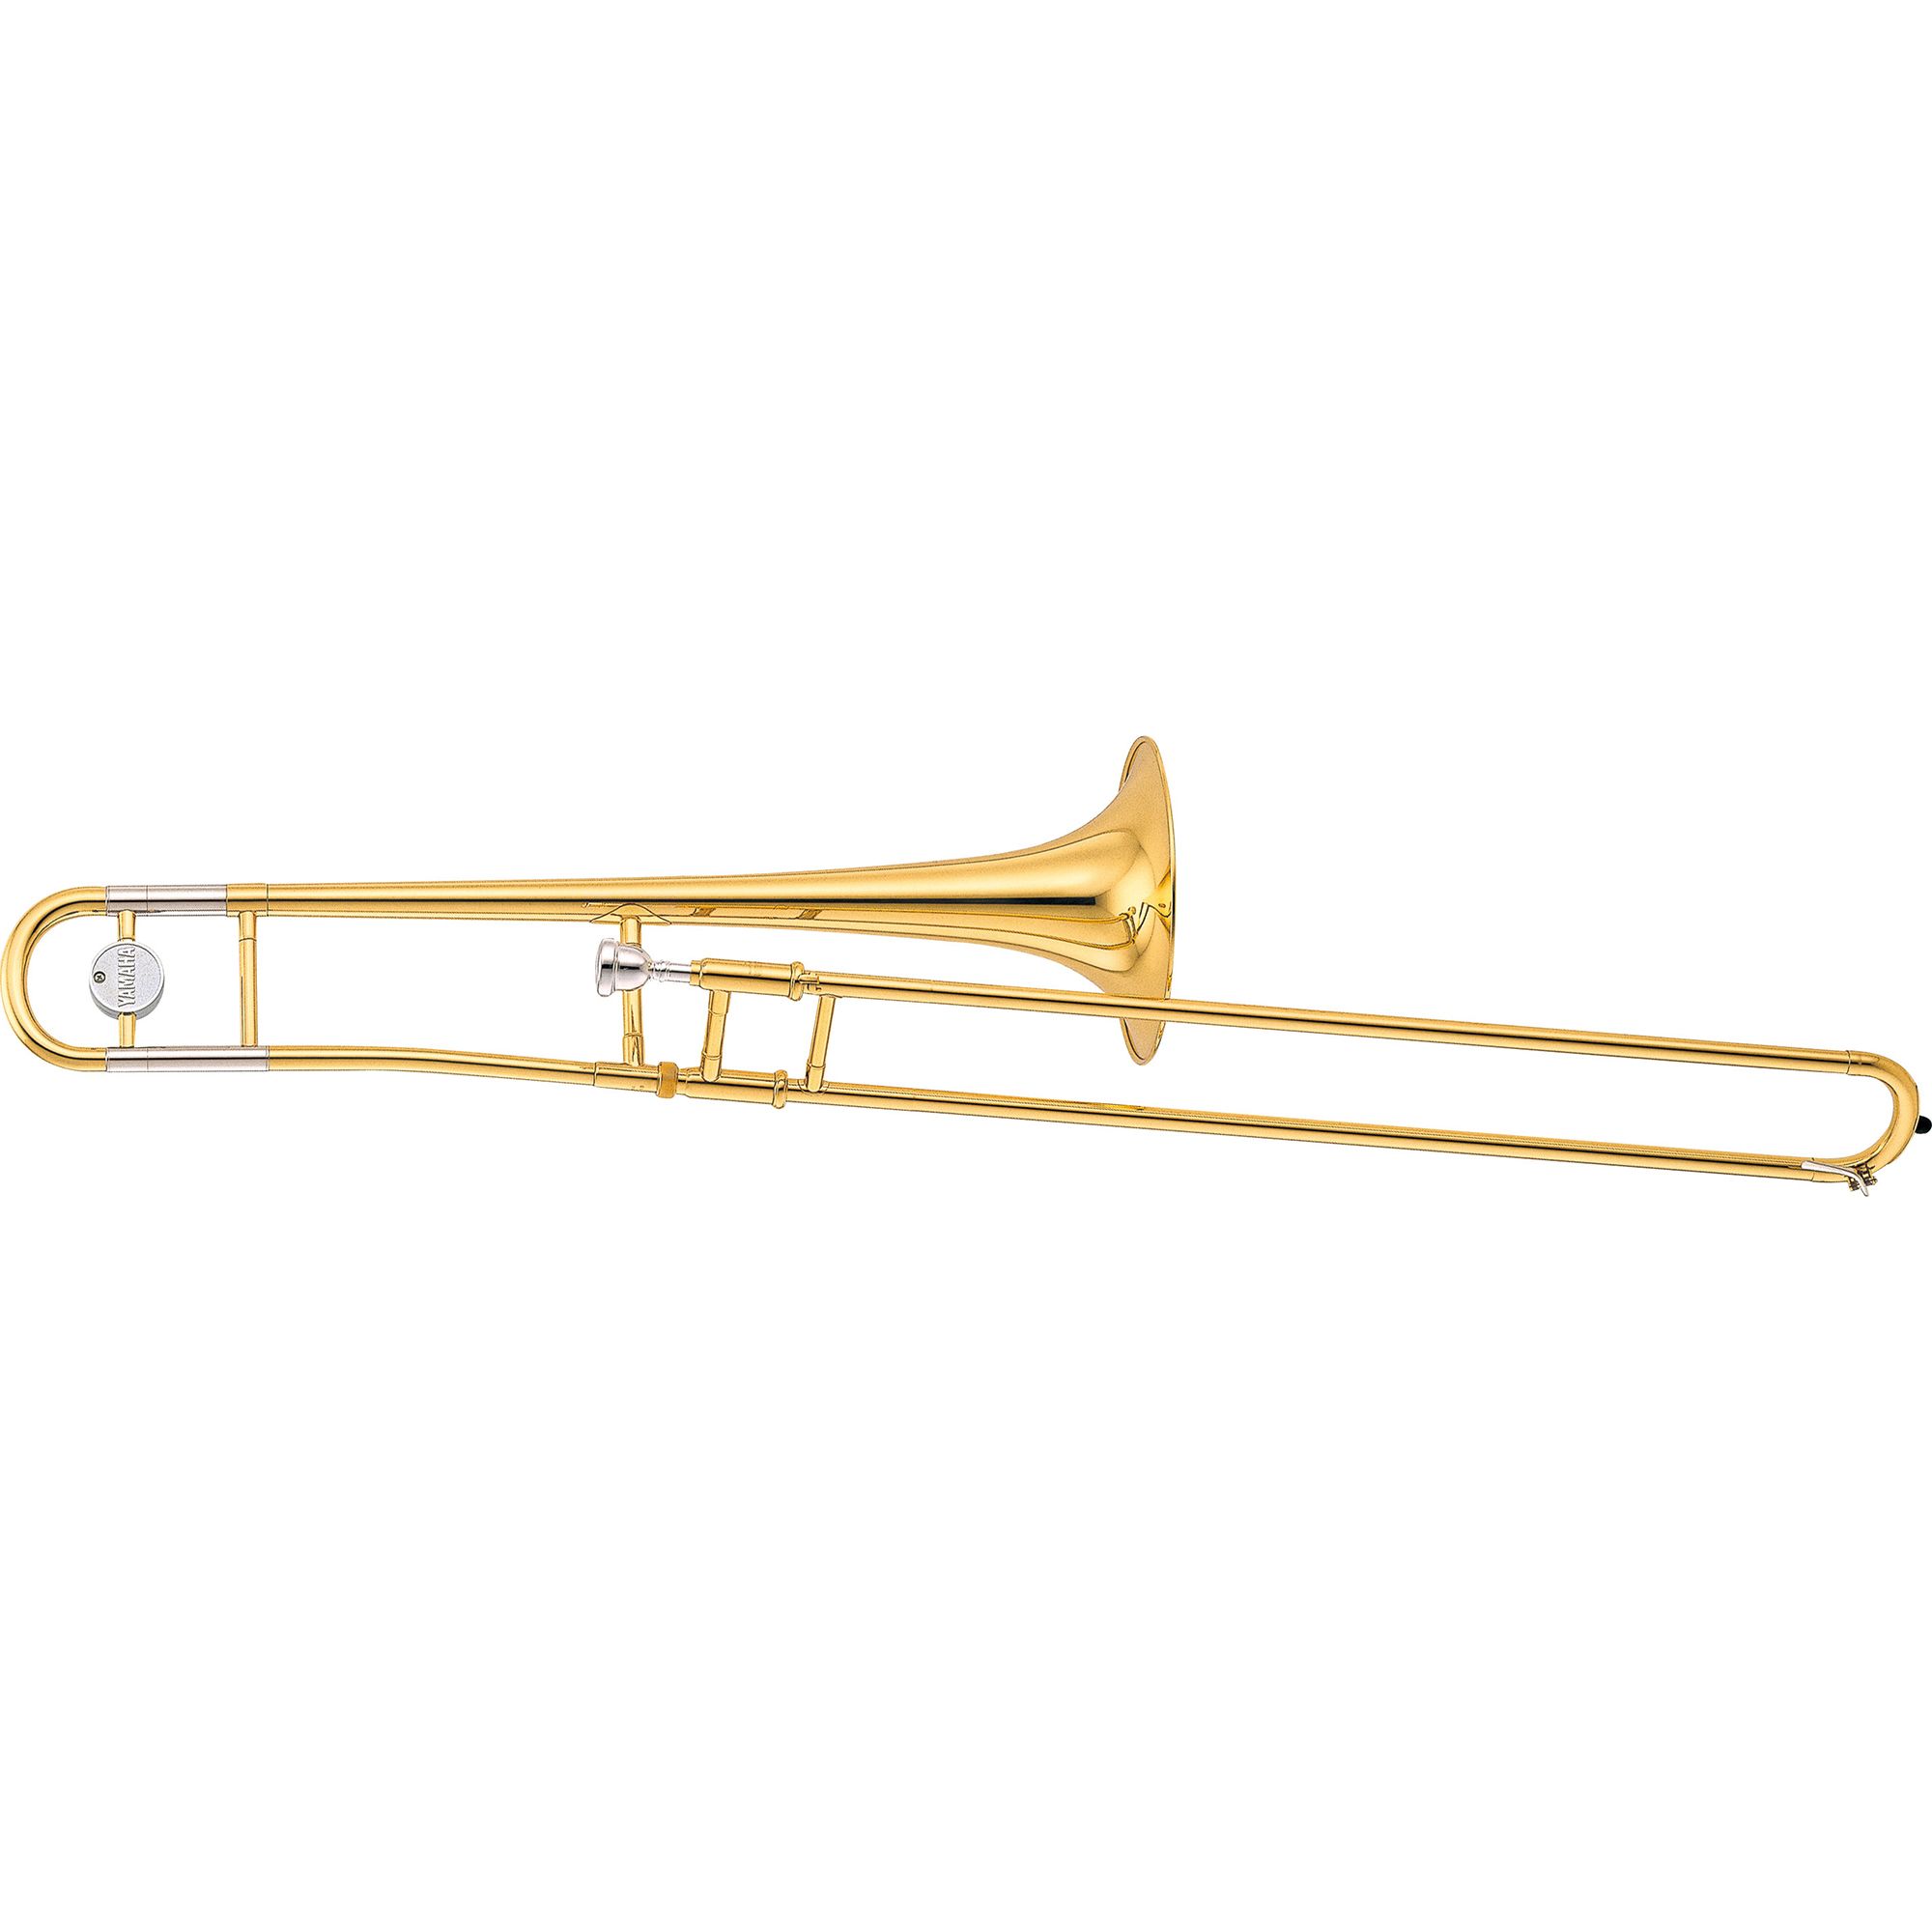 YSL-154 - Overview - Trombones - Brass & Woodwinds - Musical 